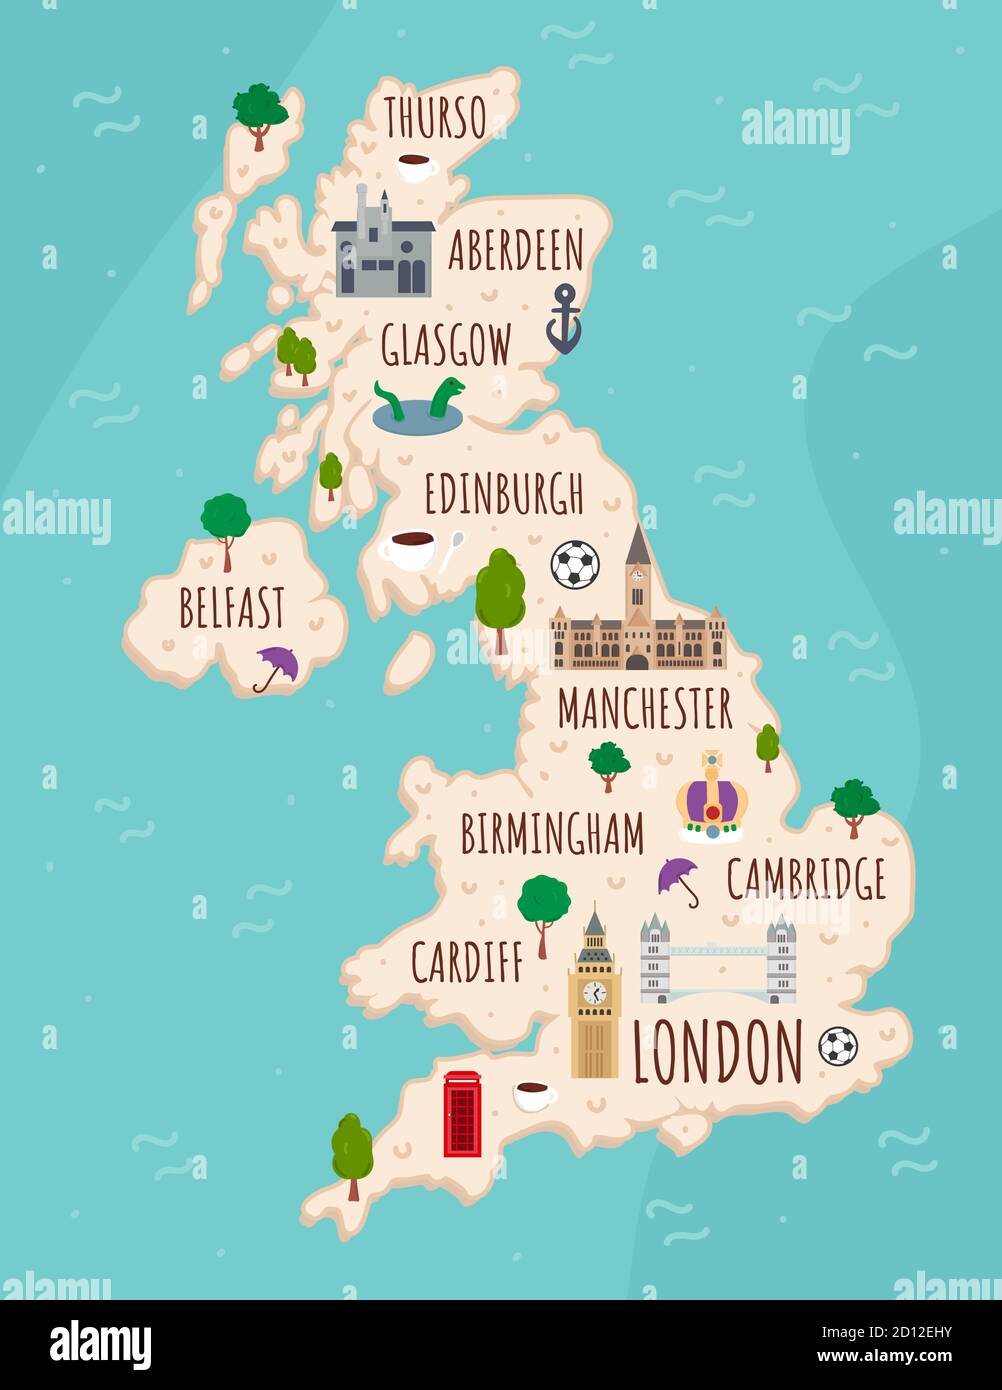 Mapa de dibujos animados del Reino Unido. Ilustración de viaje con monumentos, edificios, alimentos y plantas británicos. Infografía turística divertida. Símbolos nacionales Ilustración del Vector